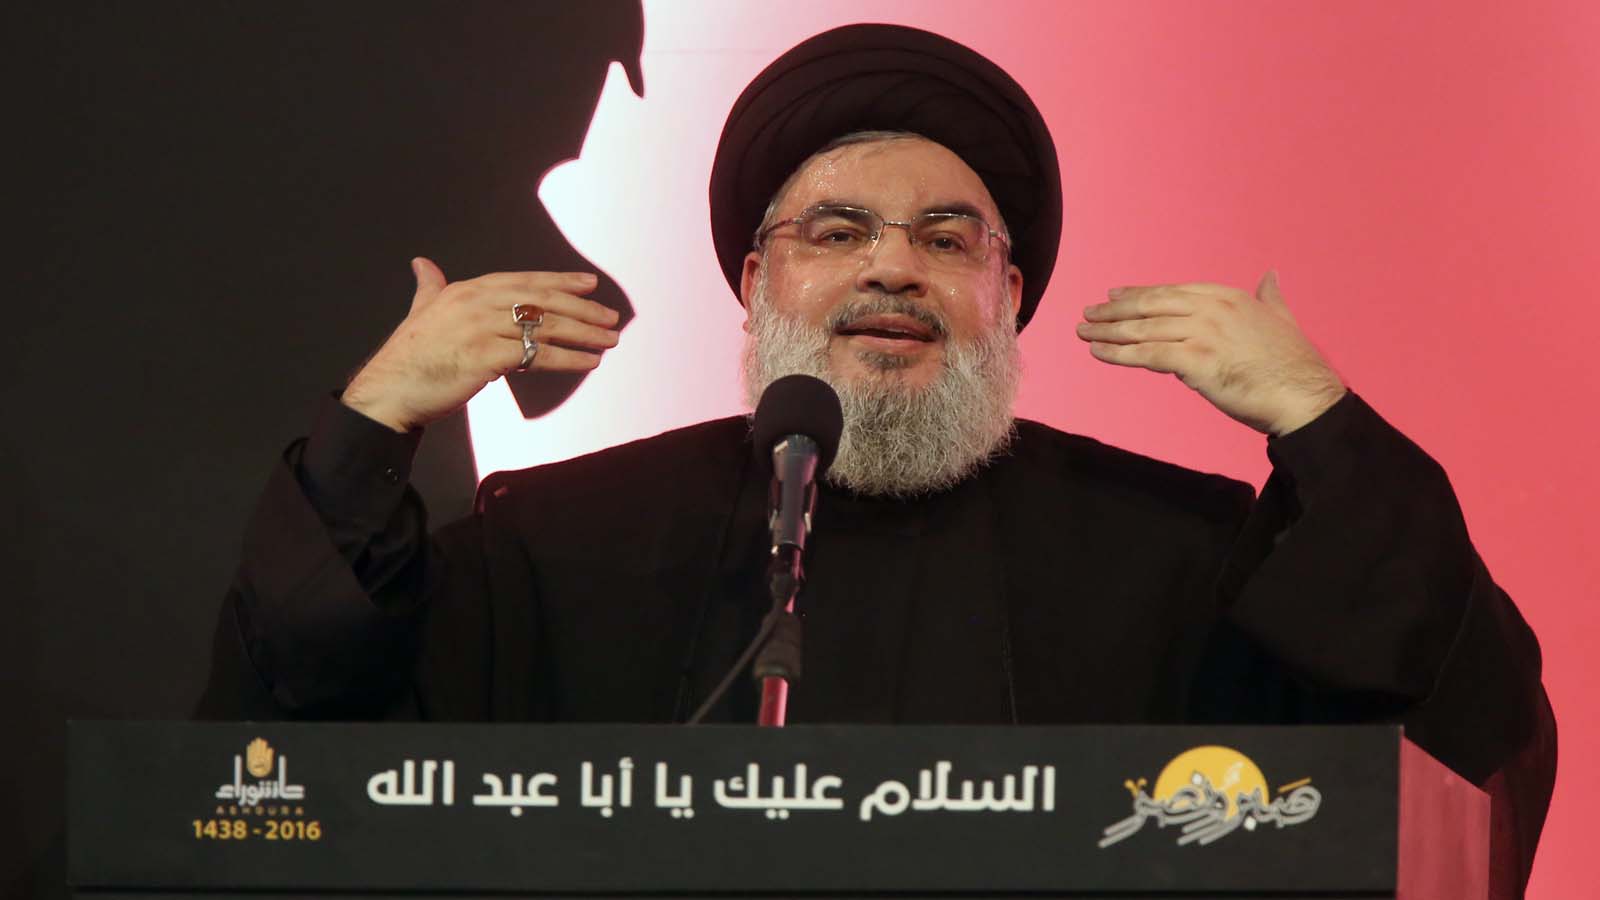 |7/24| حزب الله: حرب ضد الشيرازية